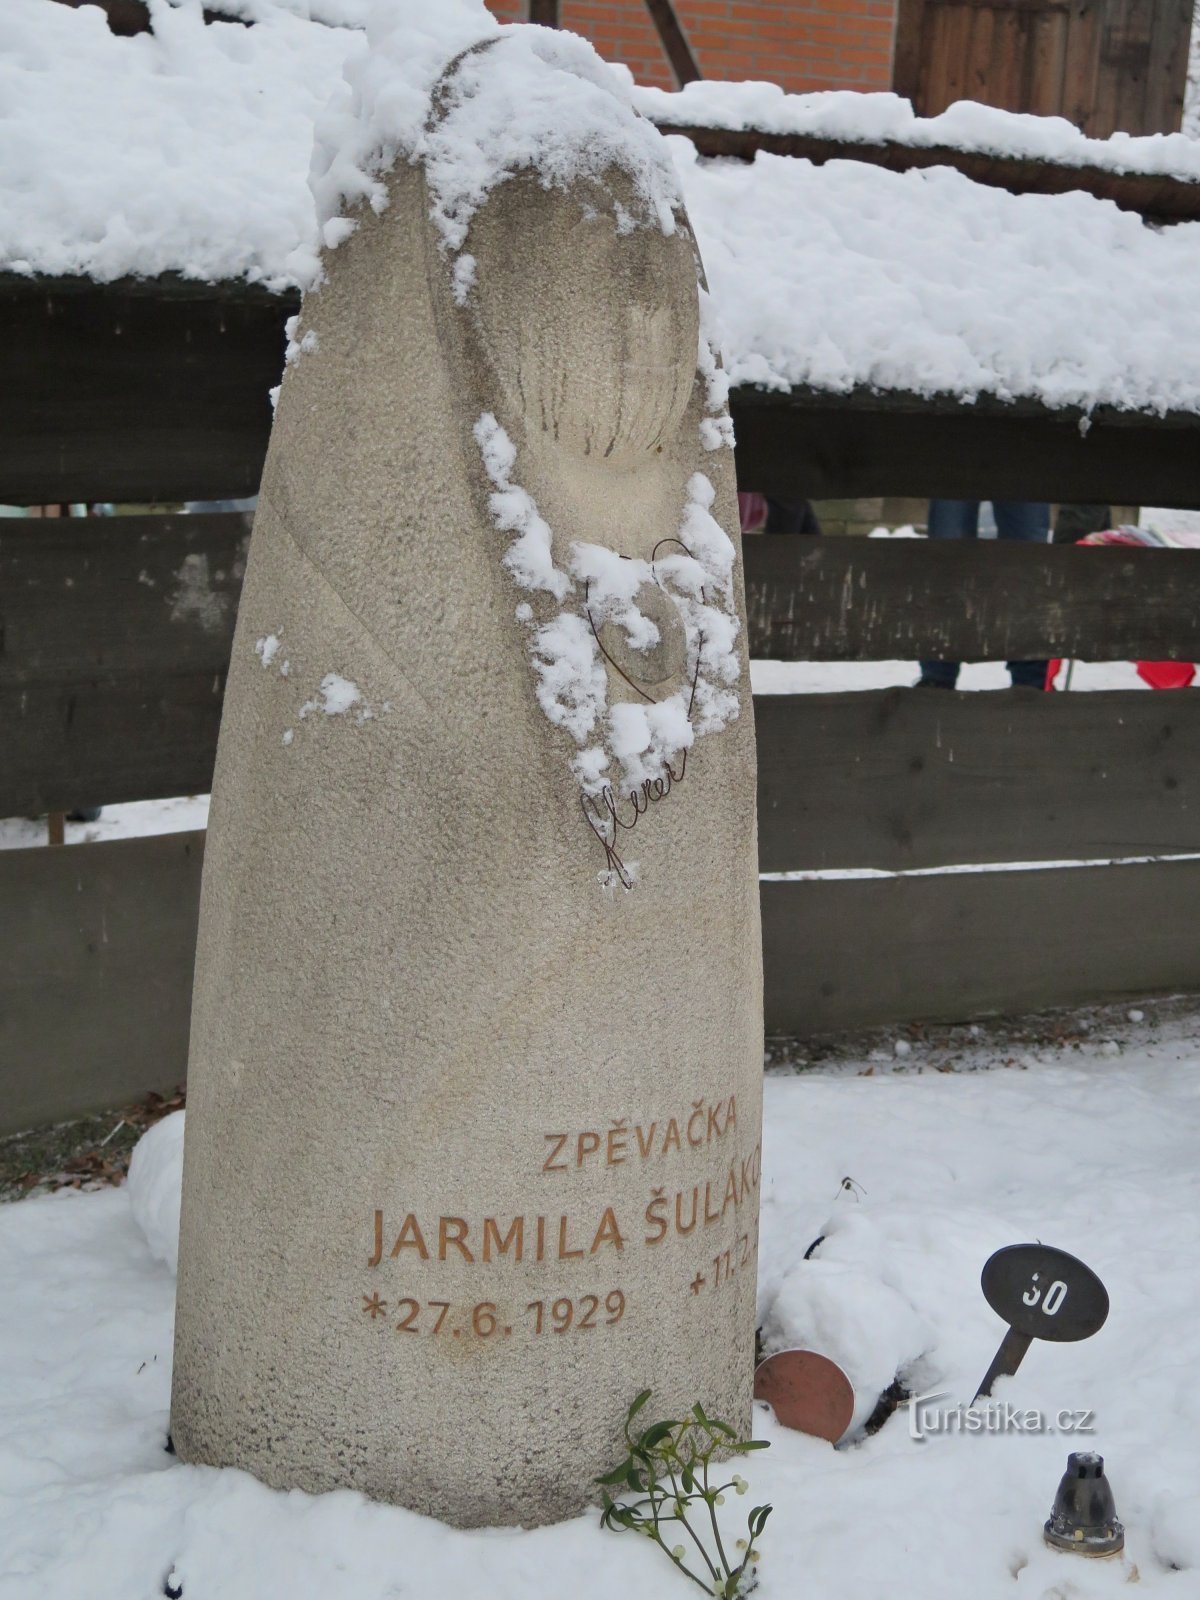 Rožnov pod Radhoštěm – mormântul memorial al reginei valahe Jarmila Šuláková